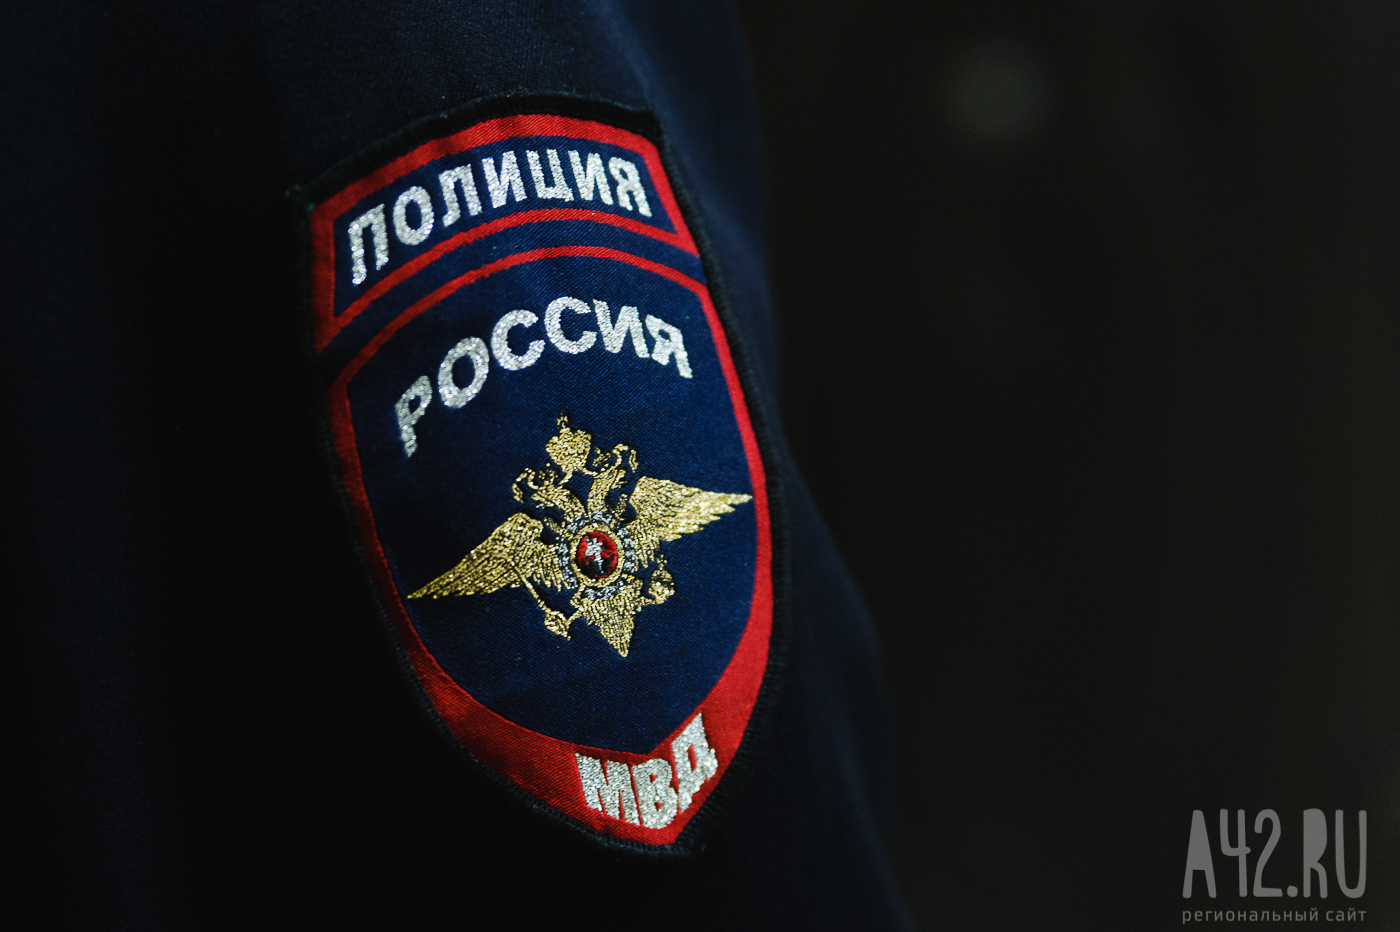  «Понравился телефон прохожего и решил оставить»: полицейские в Кузбассе раскрыли уголовное дело о грабеже